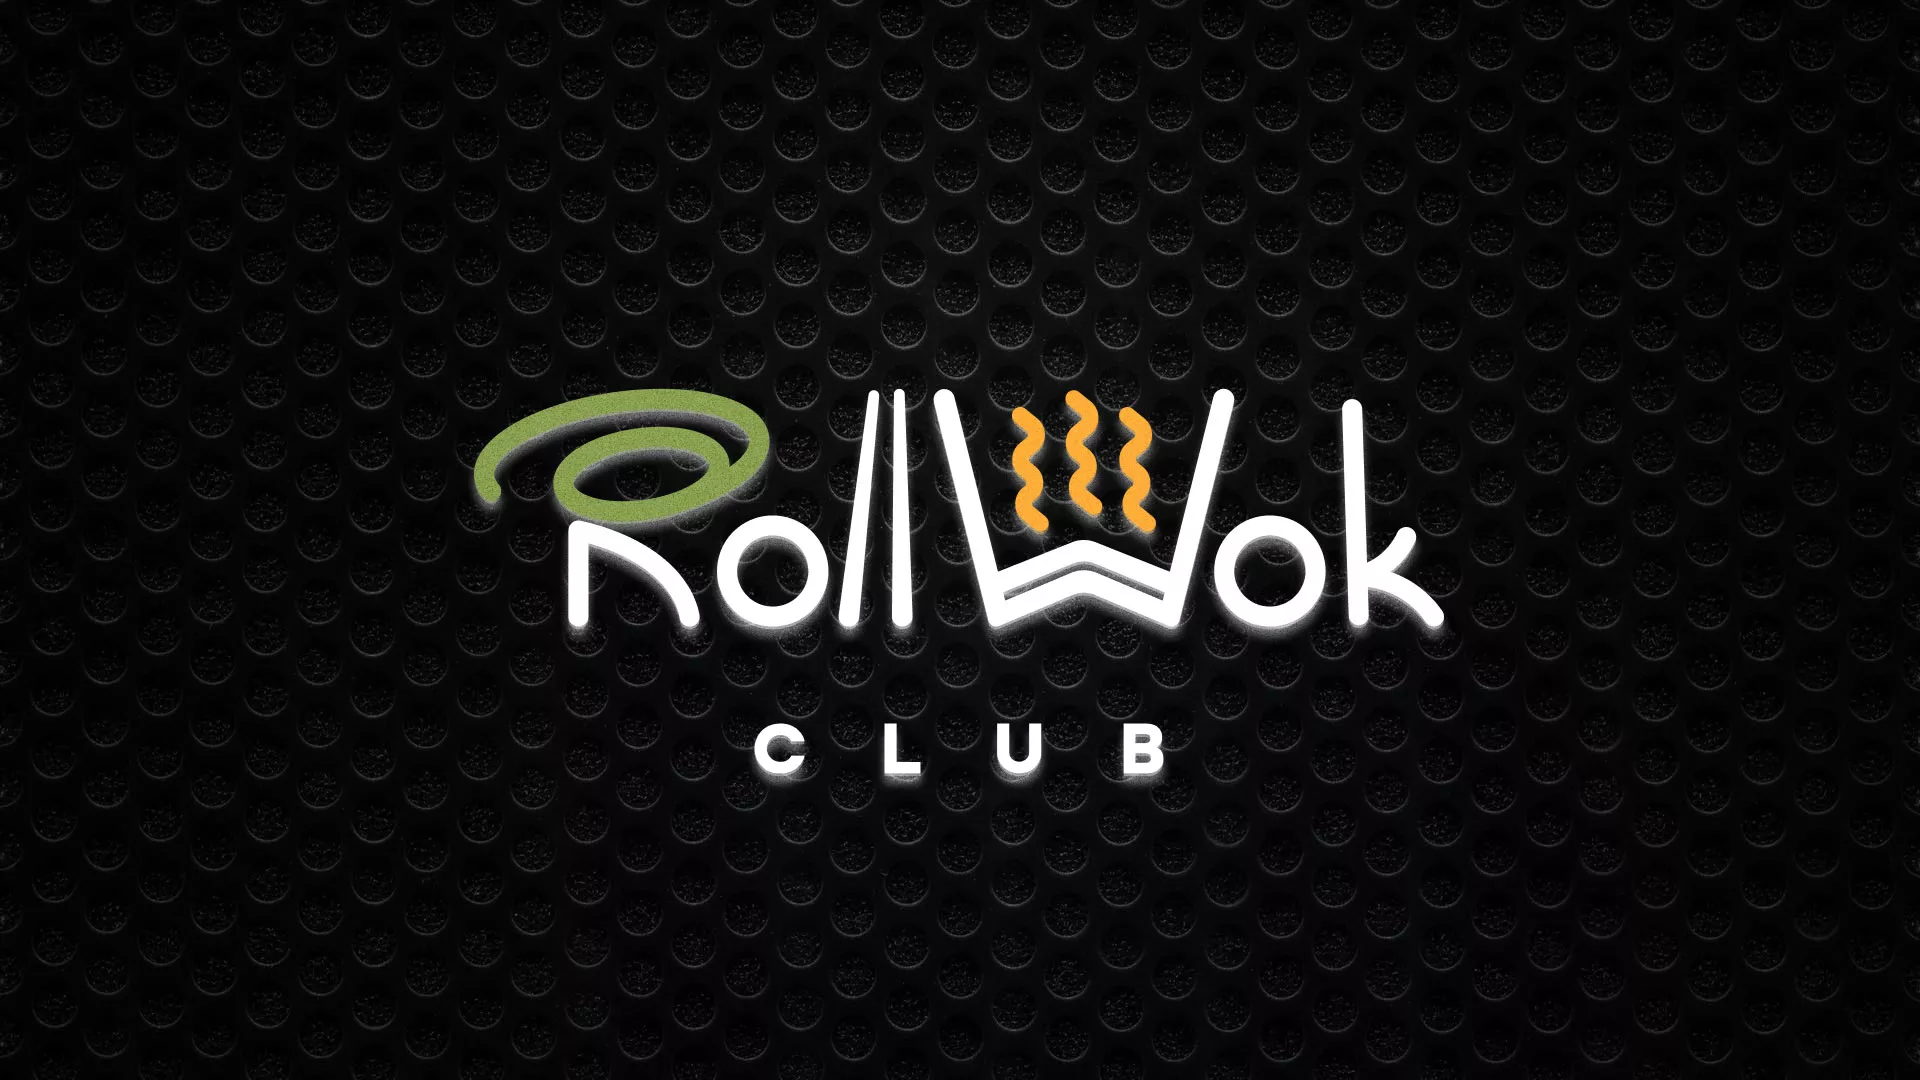 Брендирование торговых точек суши-бара «Roll Wok Club» в Сочи